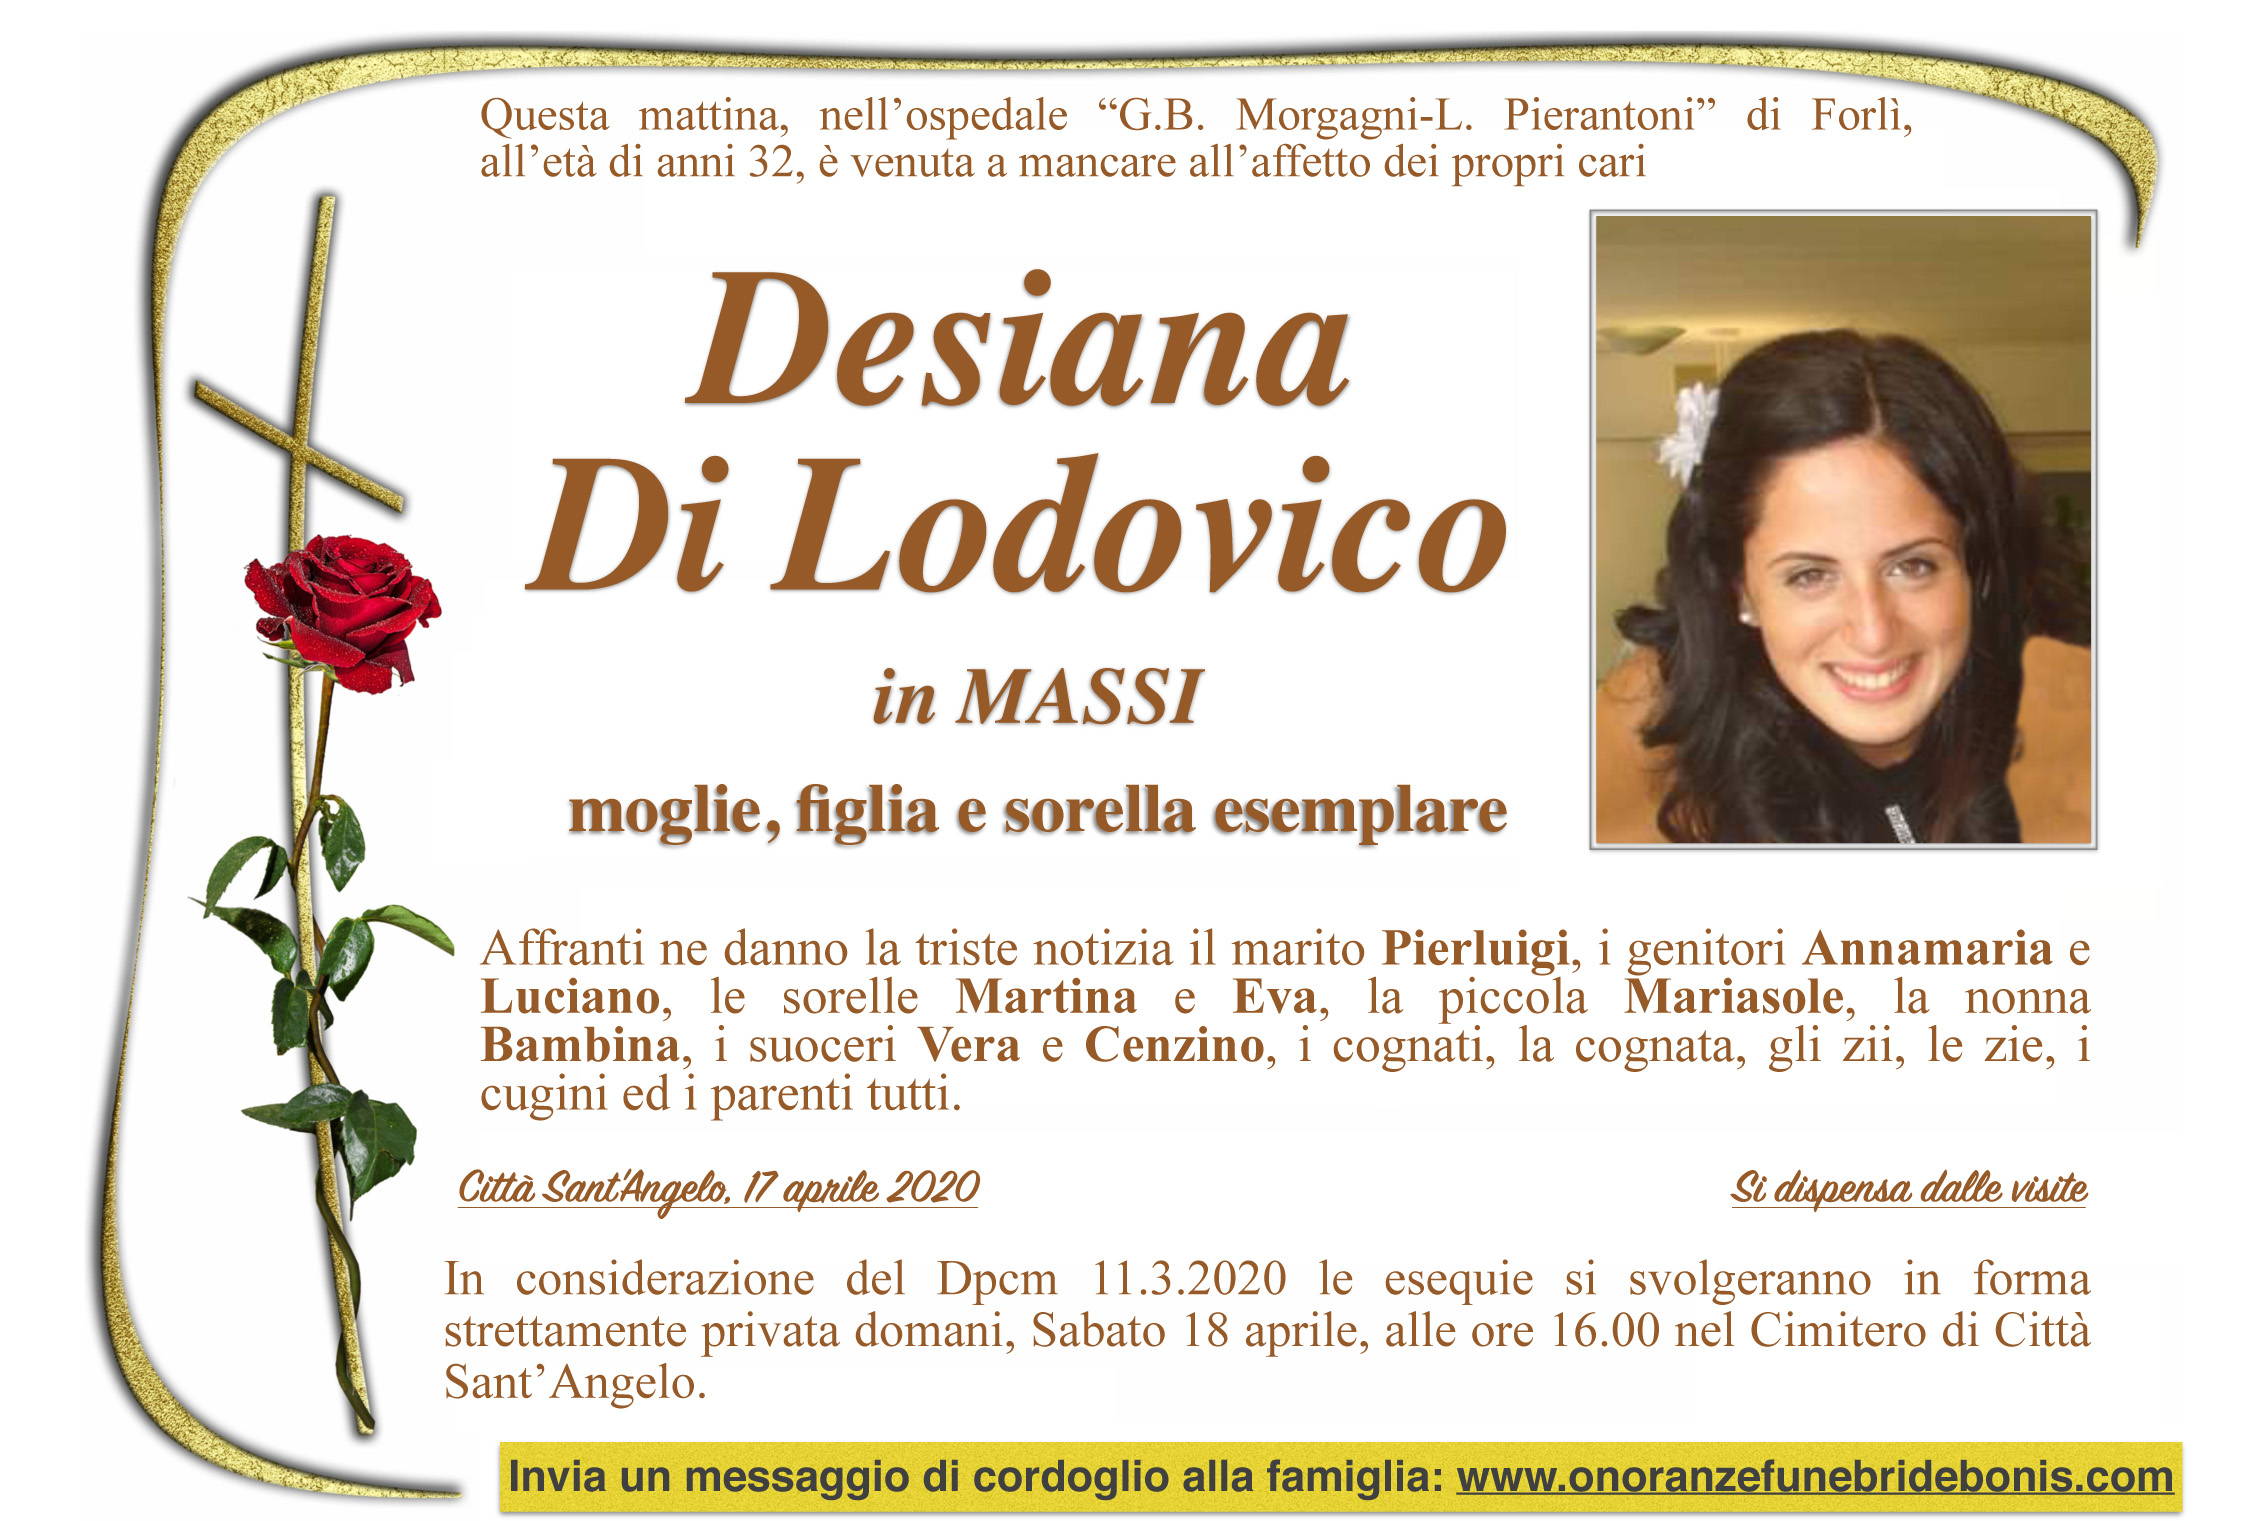 Desiana Di Lodovico